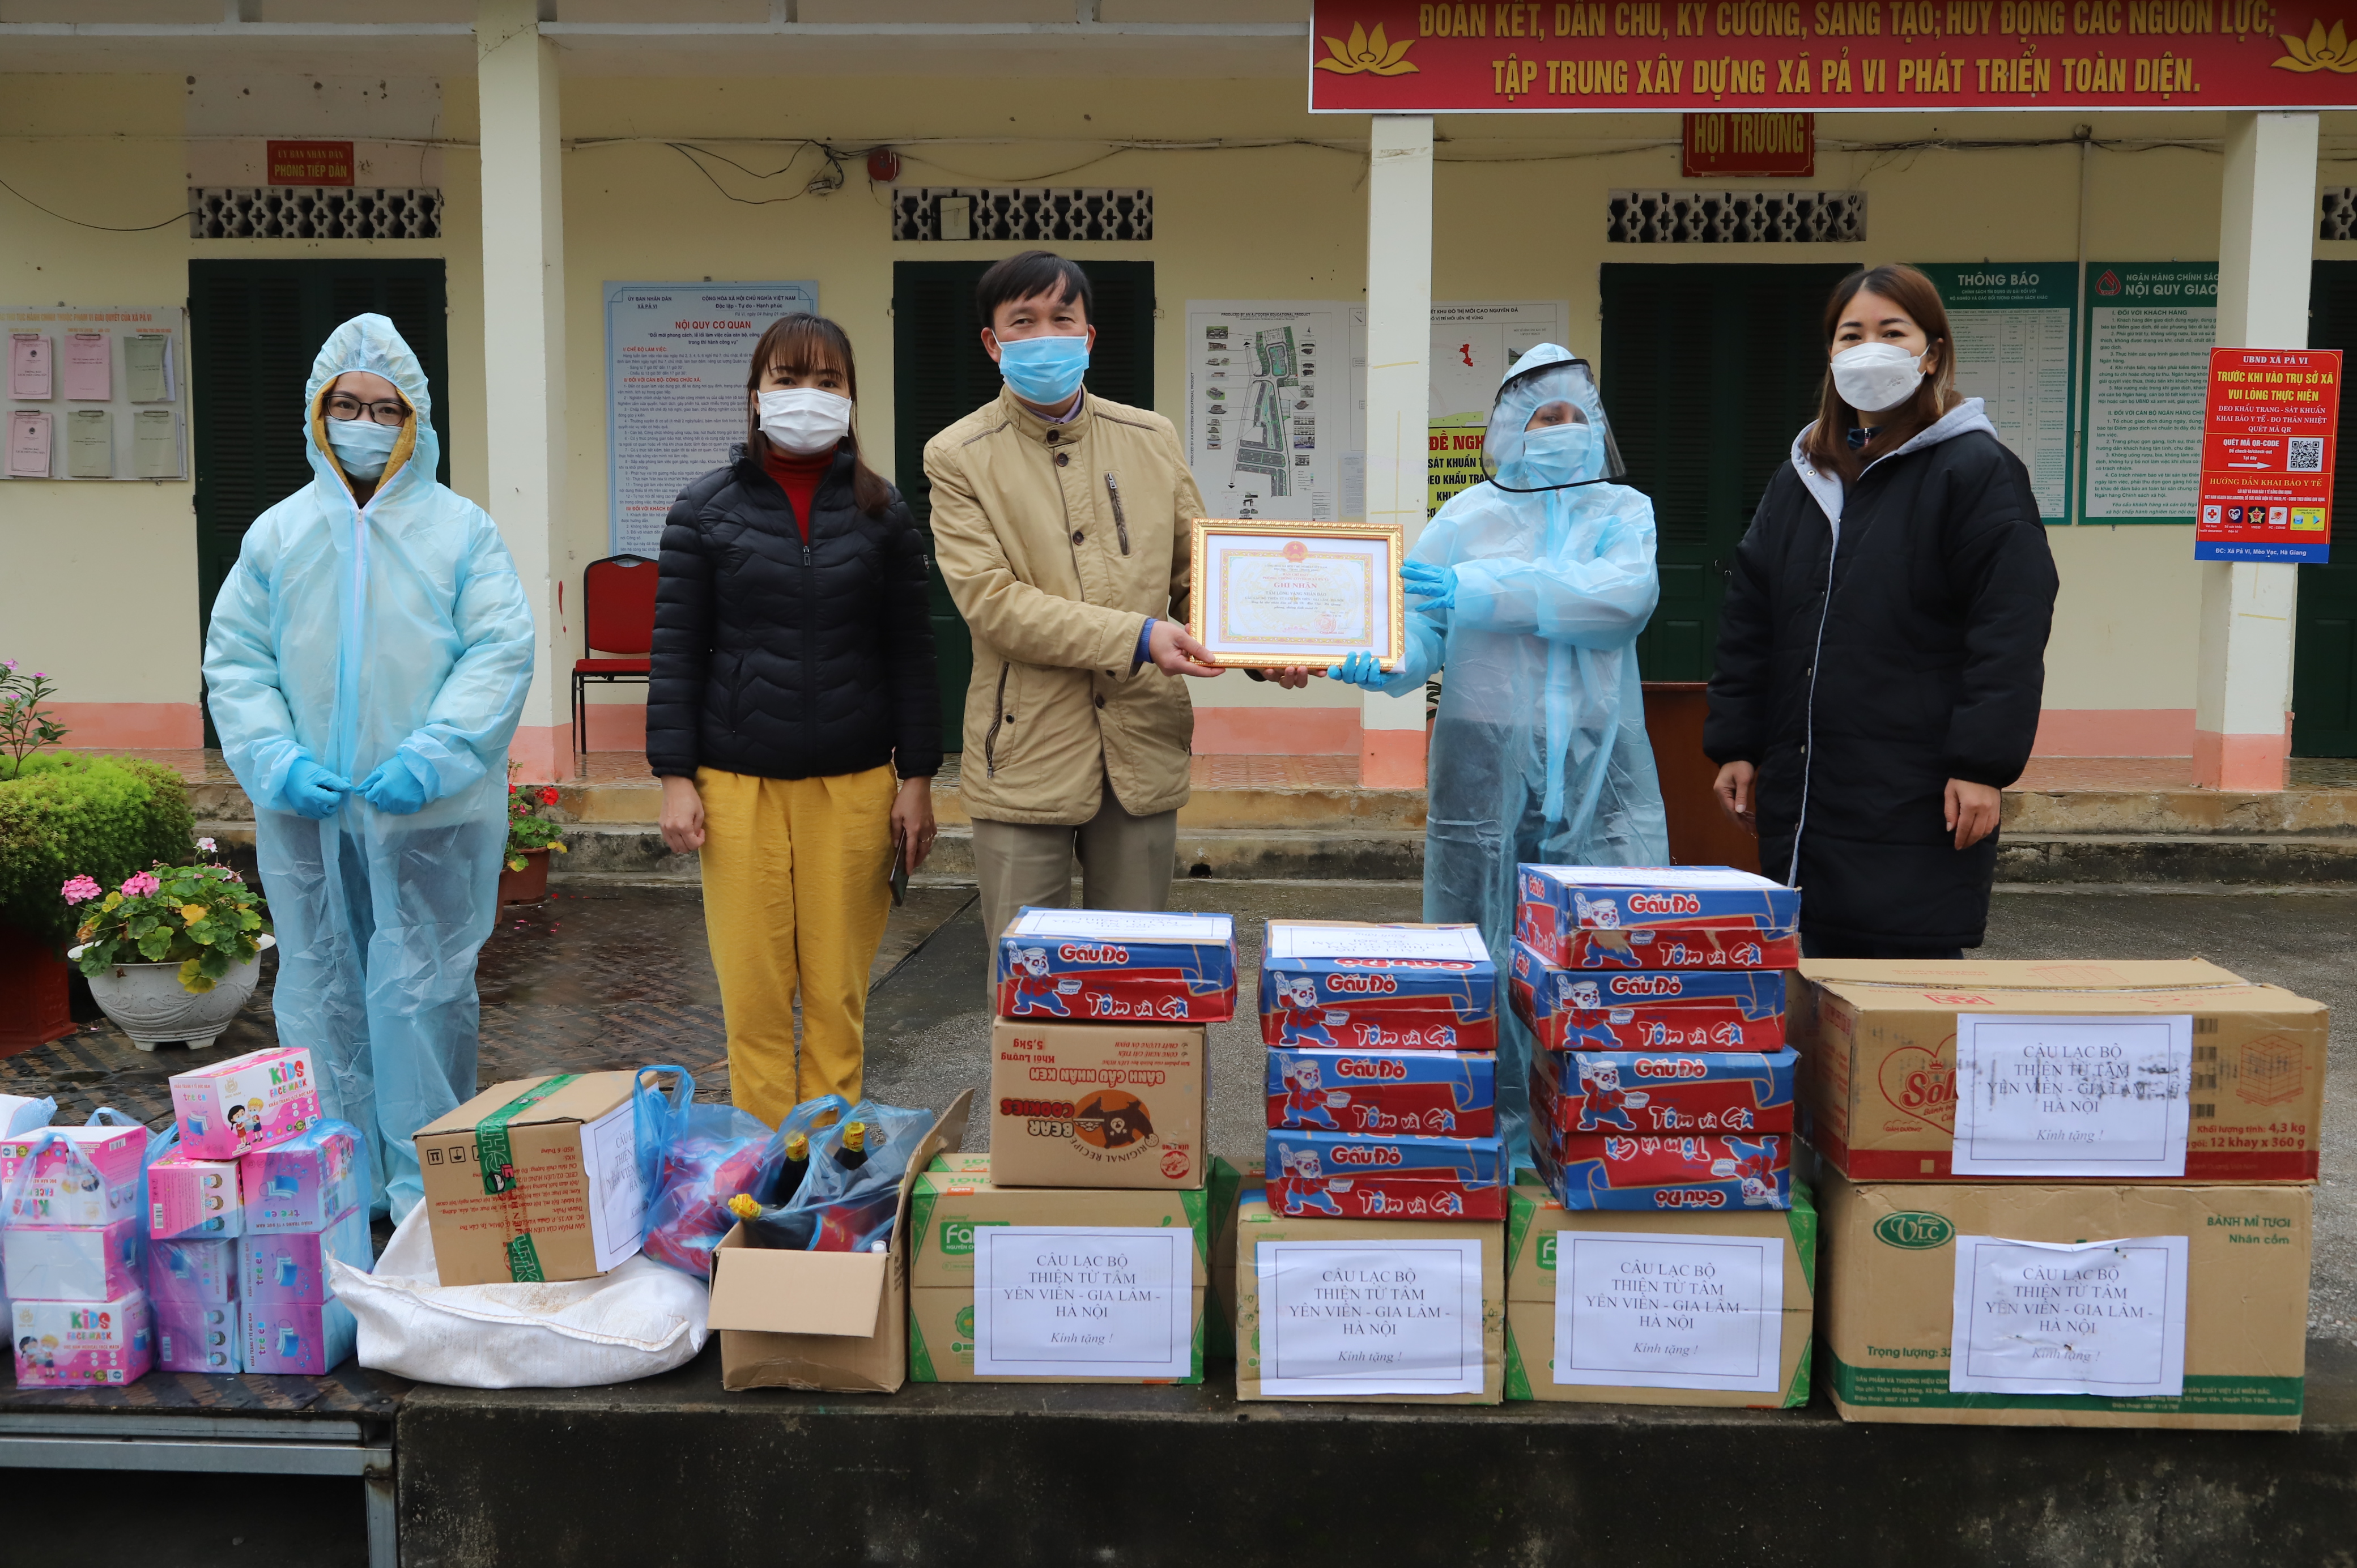 Đại diện CLB Từ Tâm – Hà Nội trao nhu yếu phẩm, đụng cụ y tế phục vụ công tác phòng, chống dịch tại xã Pả Vi 